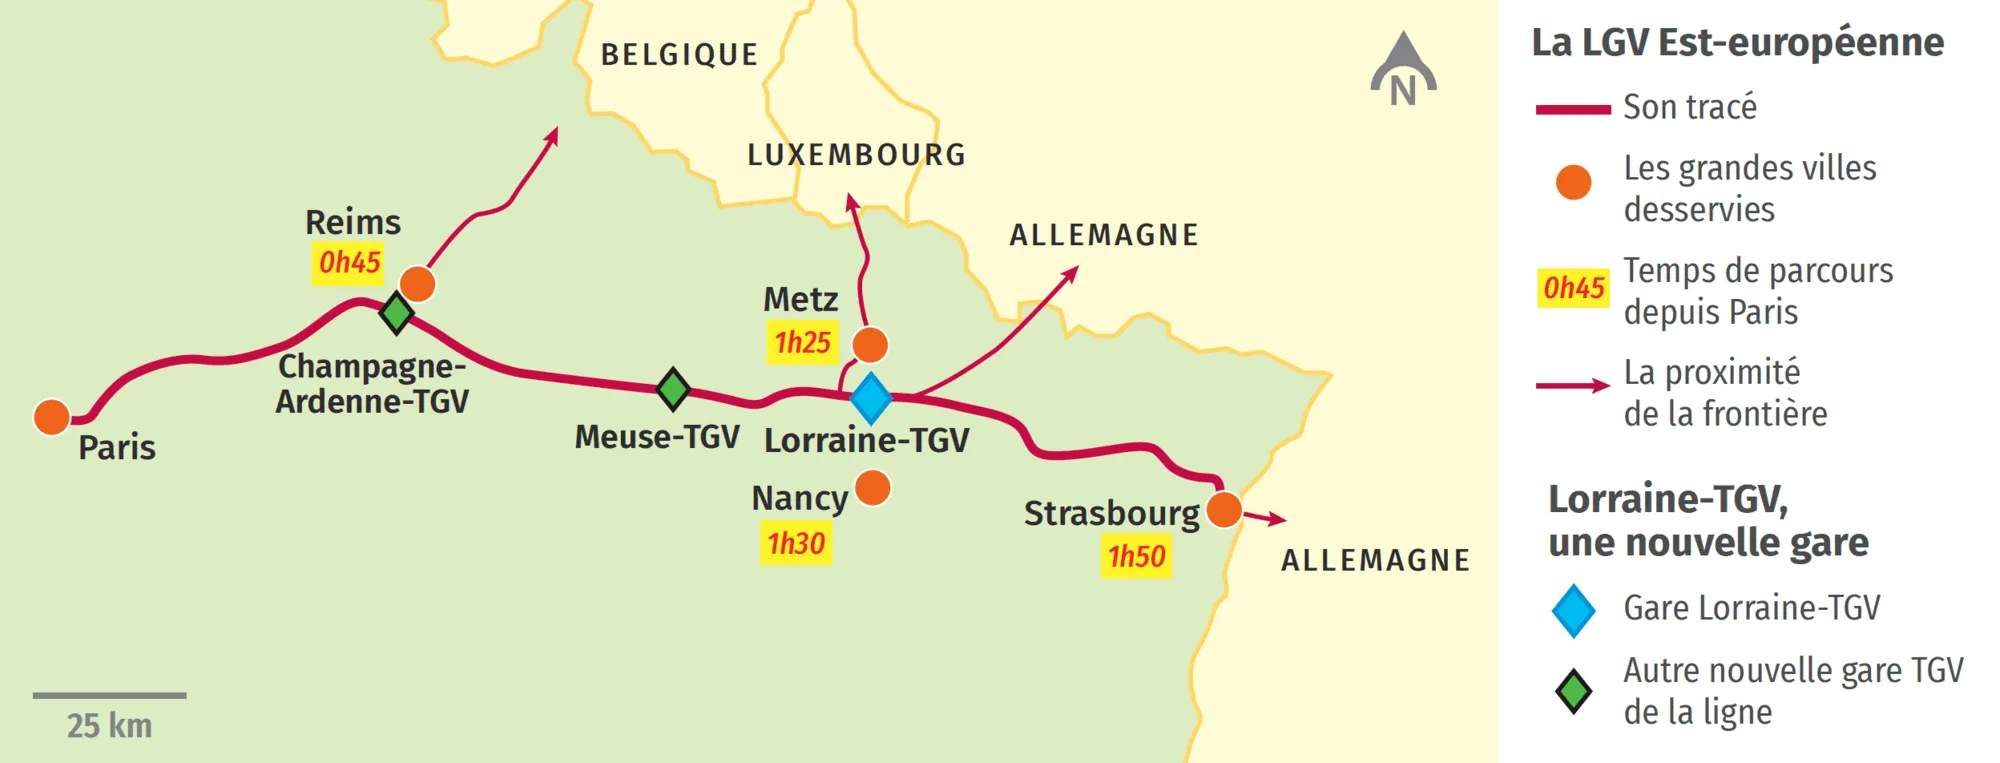 La gare Lorraine-TGV sur la LGV Est-européenne